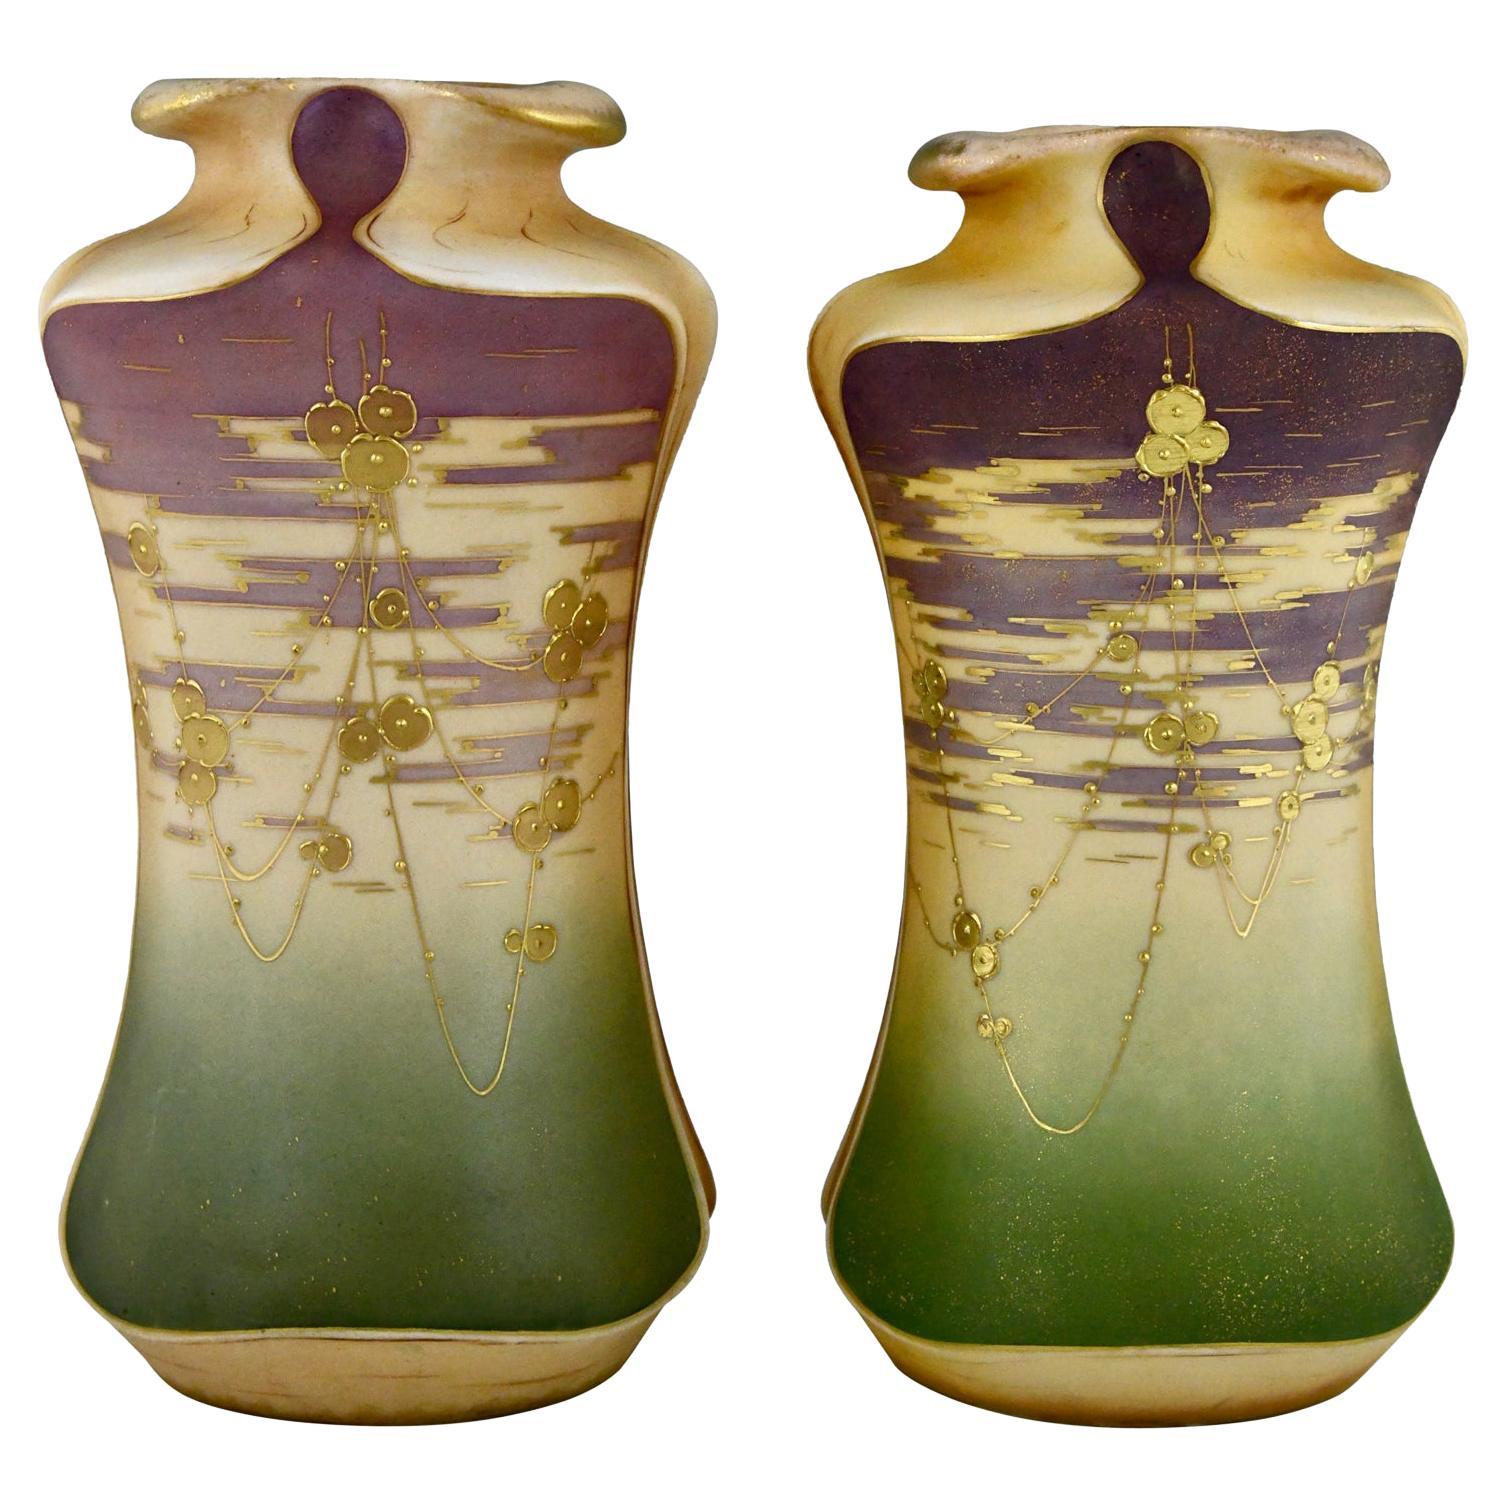 Art Nouveau ceramic vases with gilt flowers by Turn Teplitz Amphora Austria 1900 For Sale